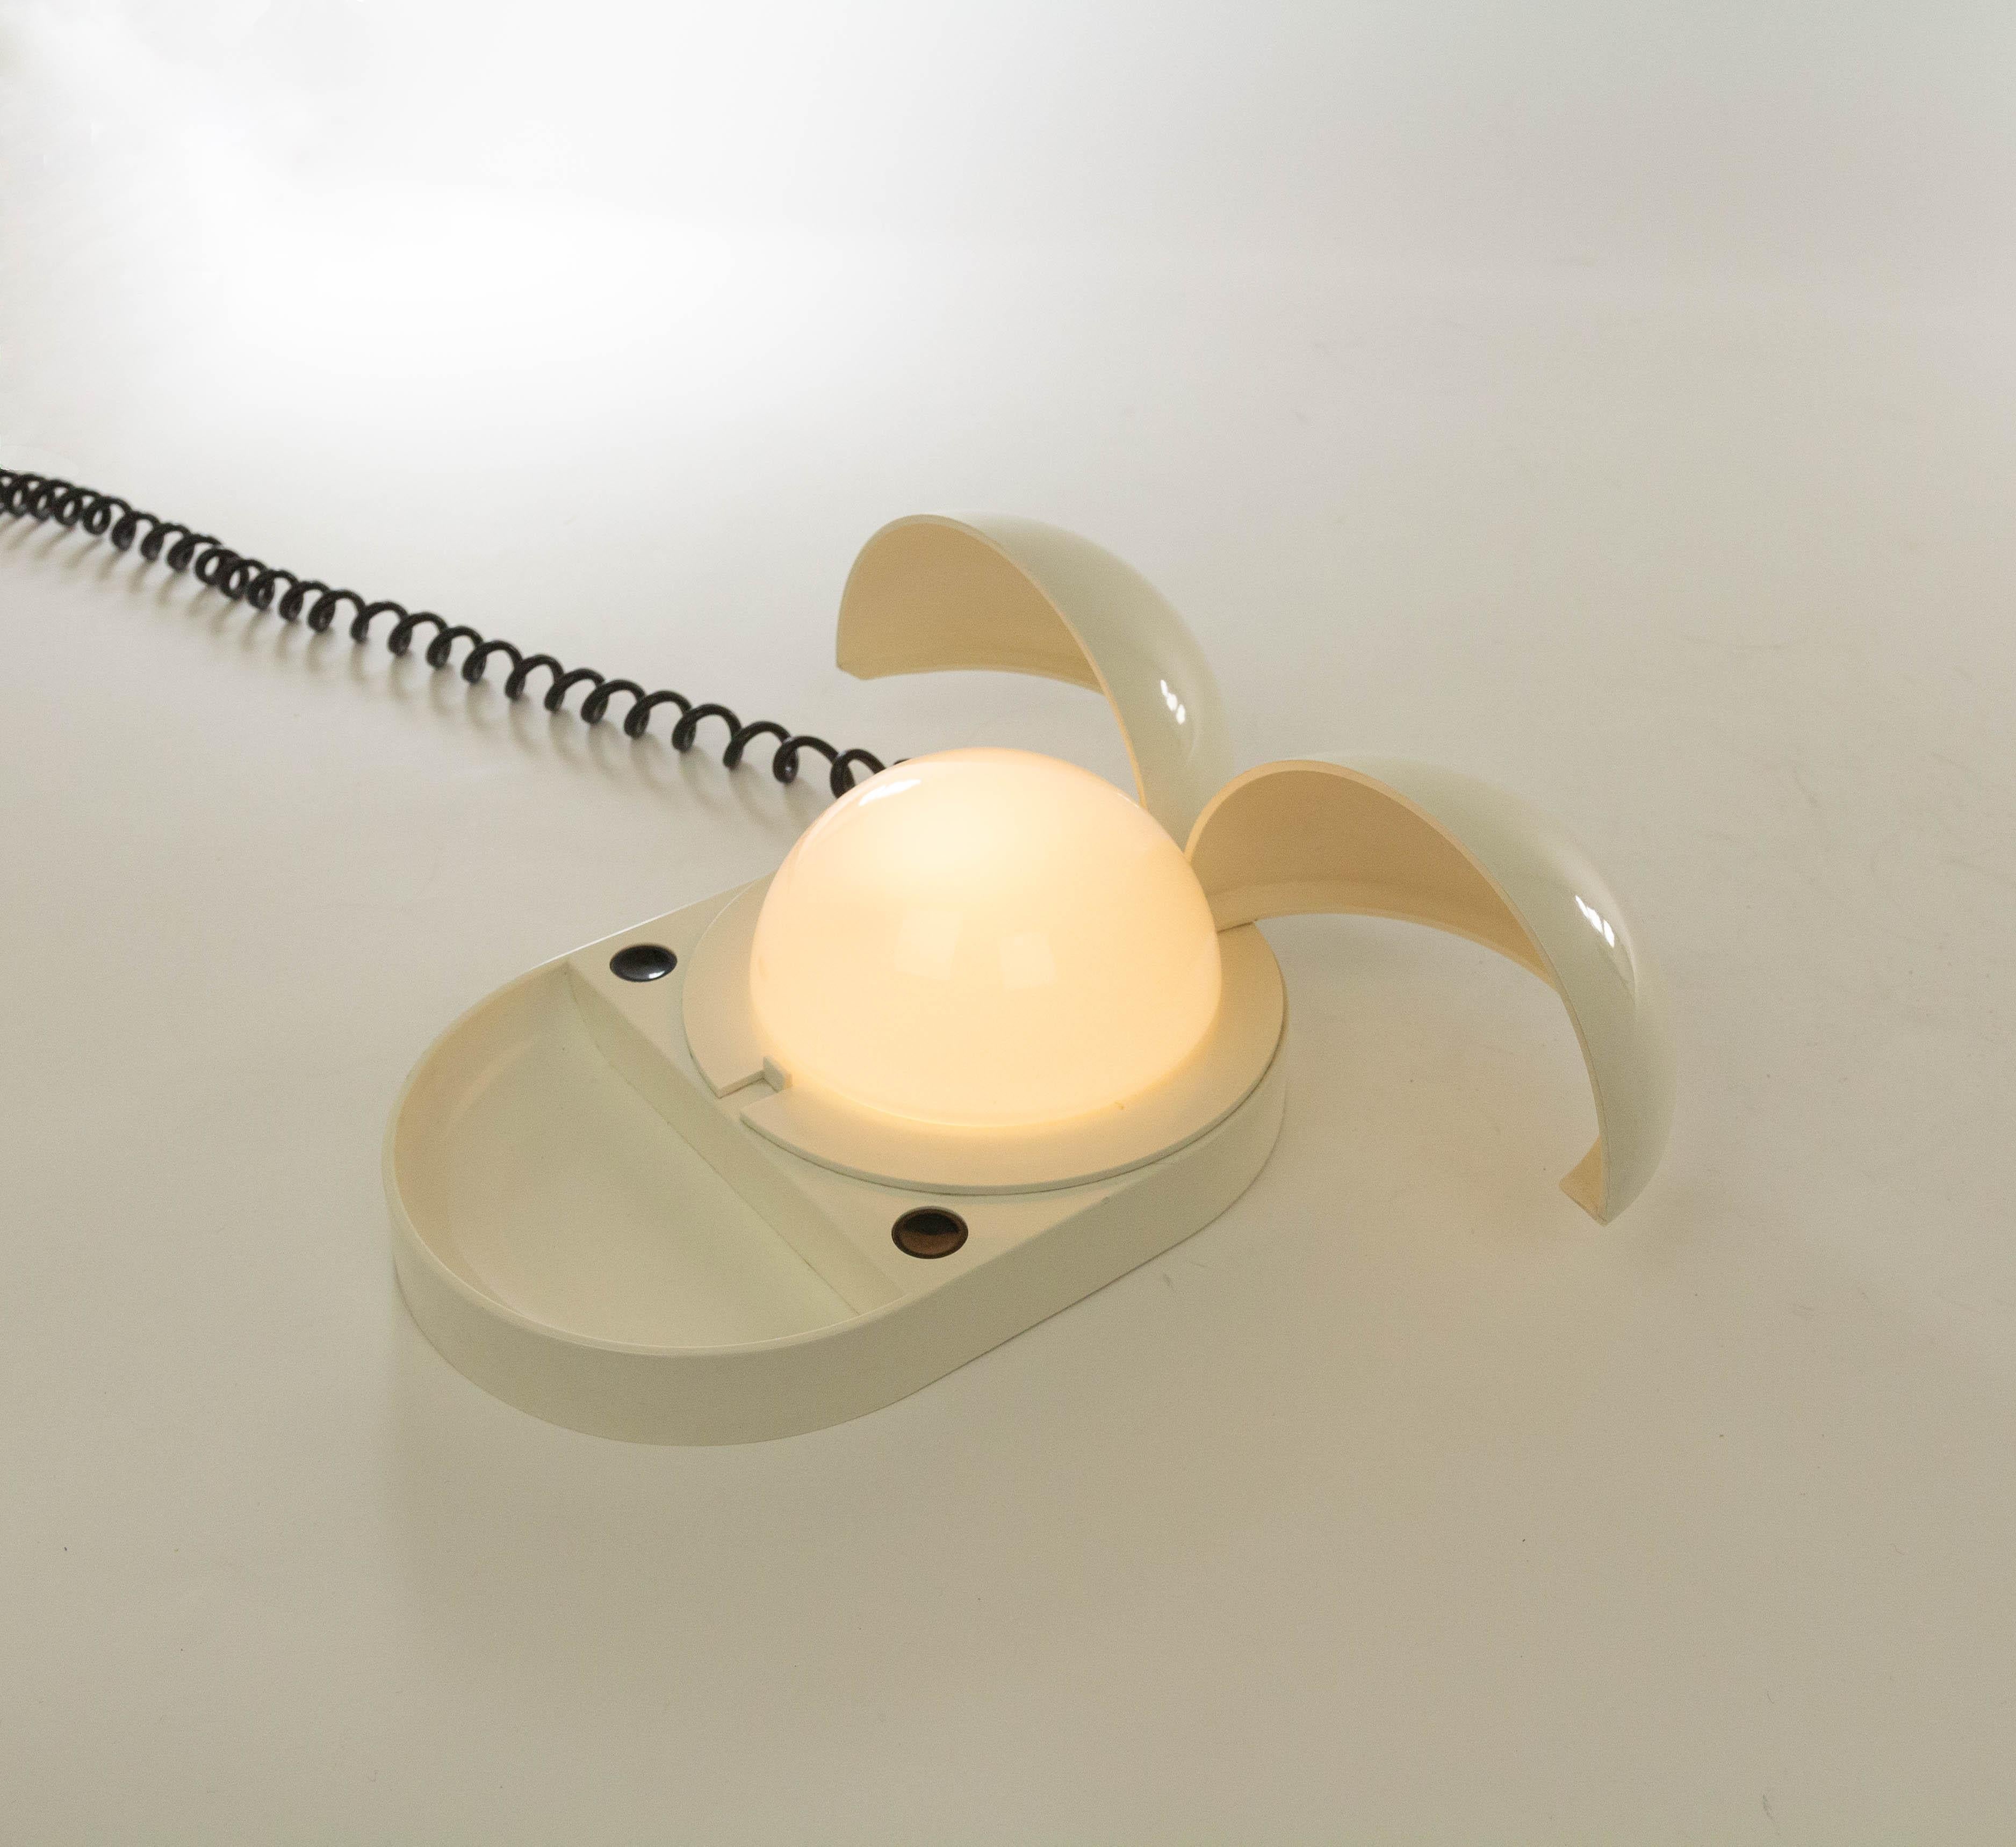 Lampe de bureau Tapira conçue par Gianemilio, Piero et Anna Monti (G.P.A. Monti) et produite par Fontana Arte, dans les années 1970.

La lampe est fabriquée en plastique et contient un hémisphère en verre opalin. Au-dessus de cet hémisphère de